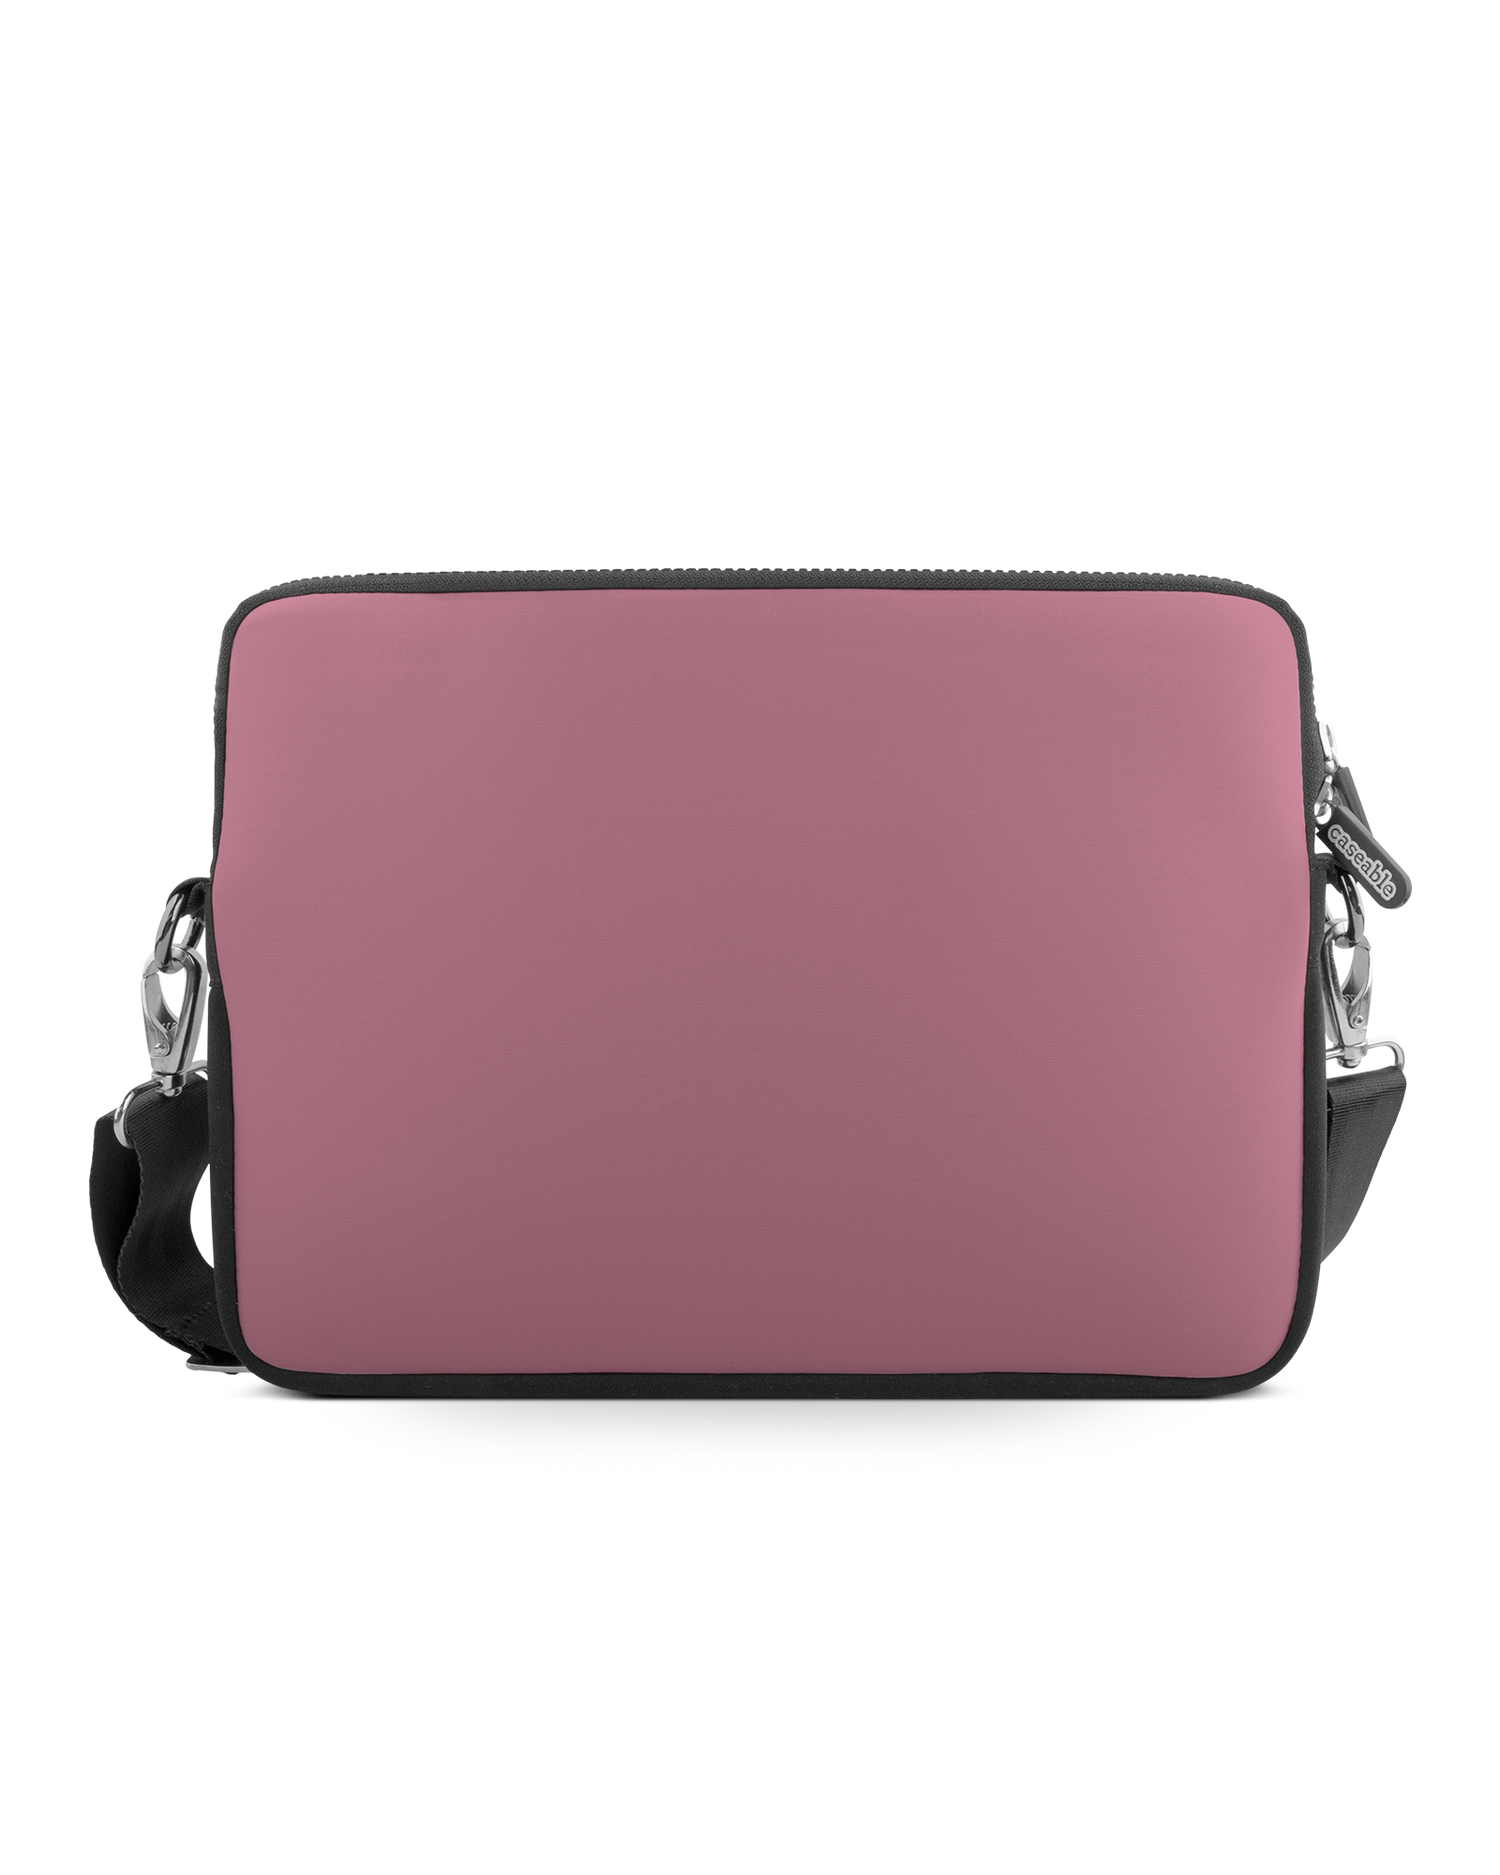 WILD ROSE Premium Laptoptasche 17 Zoll: Vorderansicht